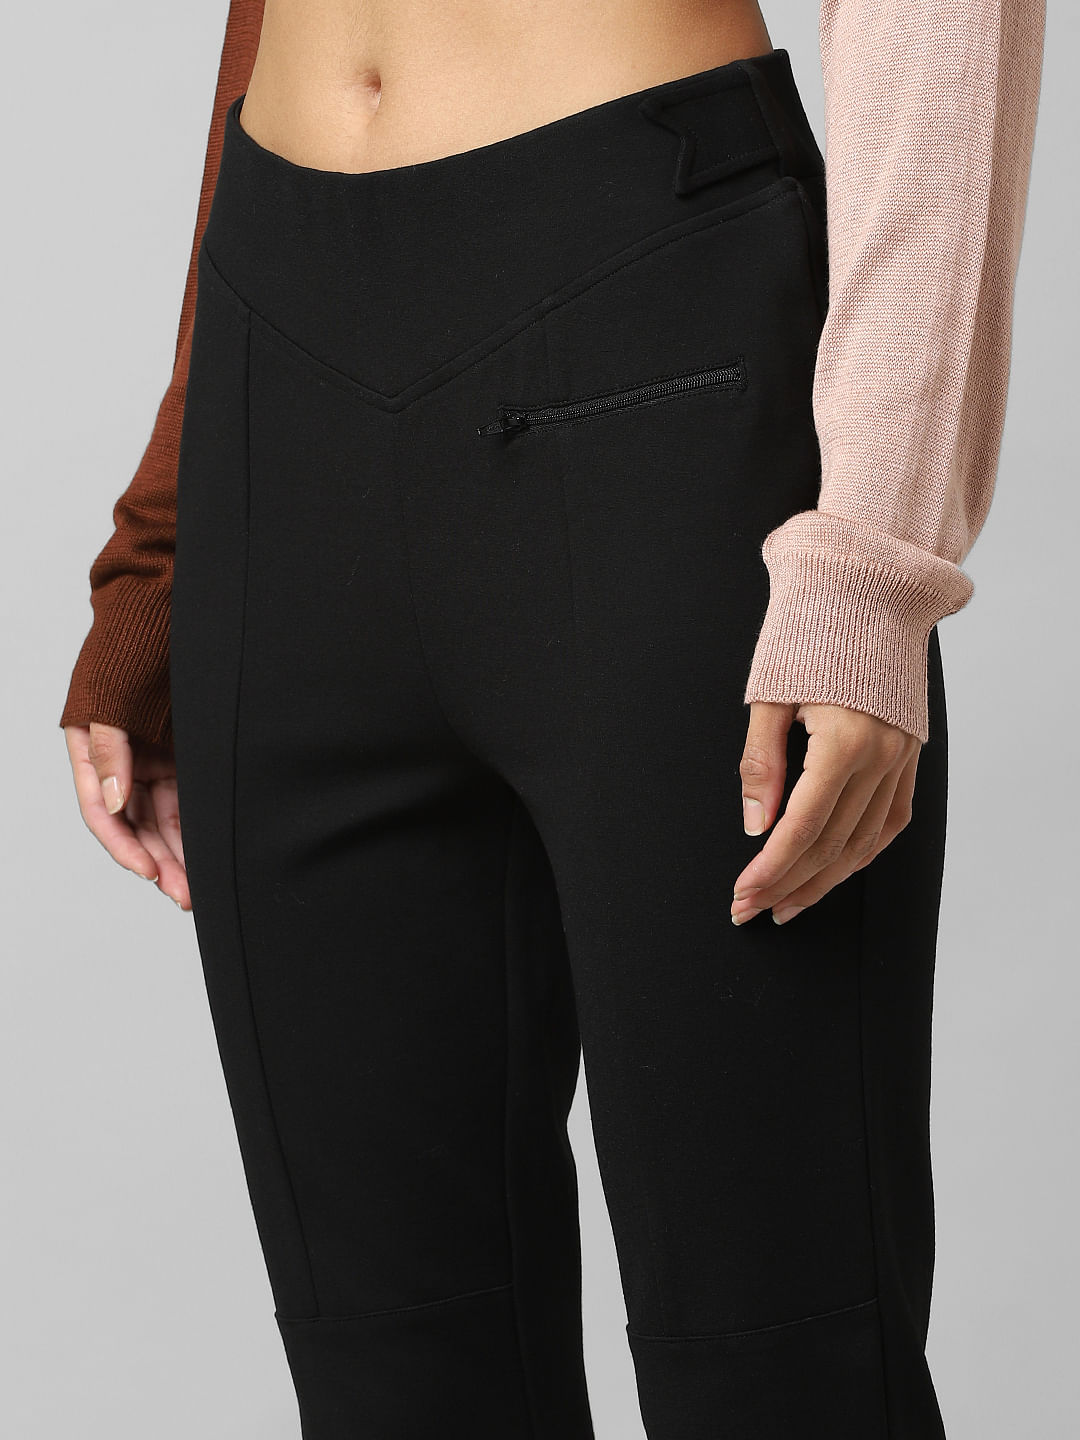 Buy Wardrobe Solid Black Pants from Westside